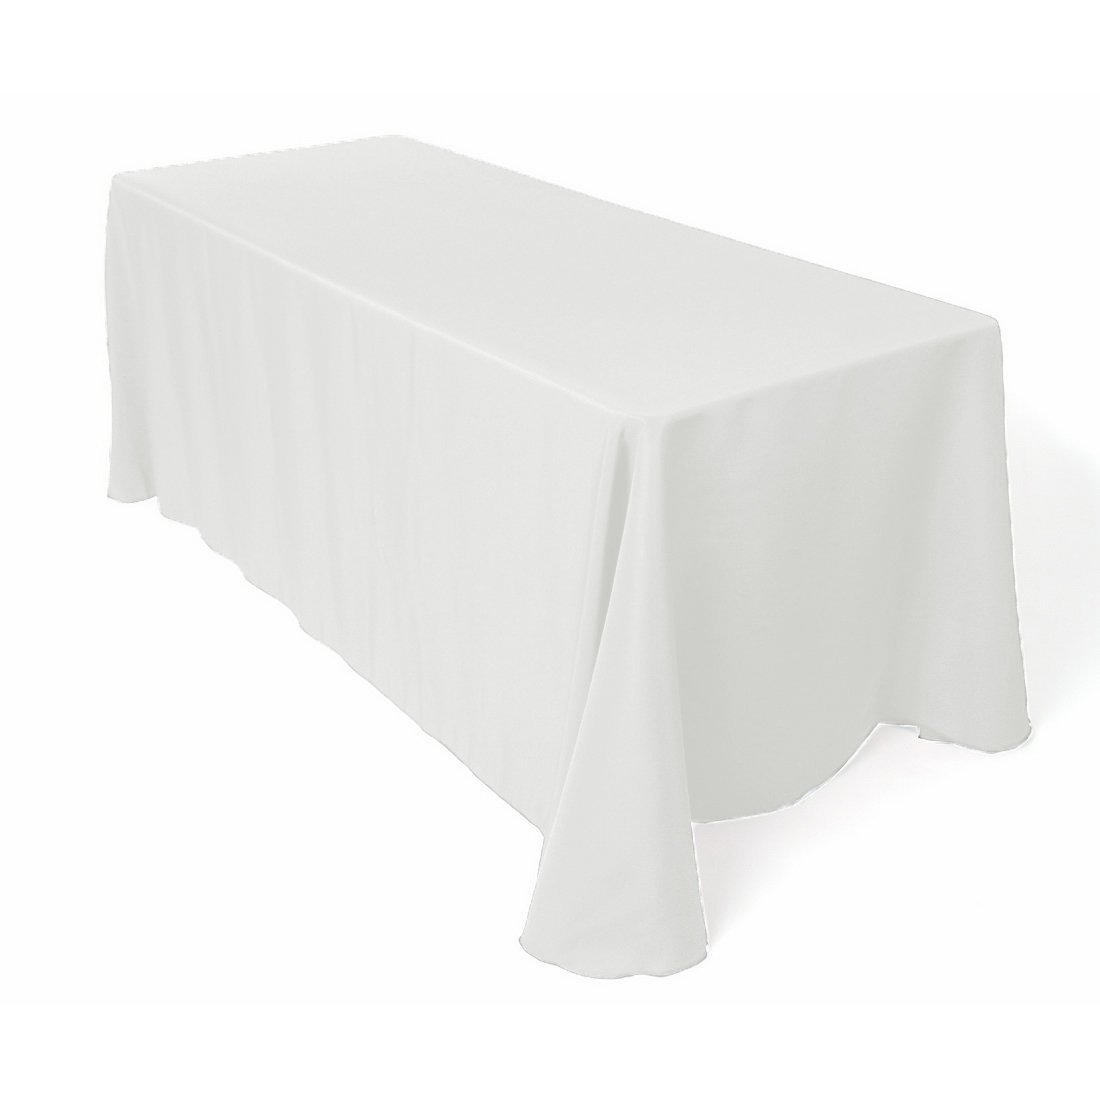 table cloth oblong white.jpg